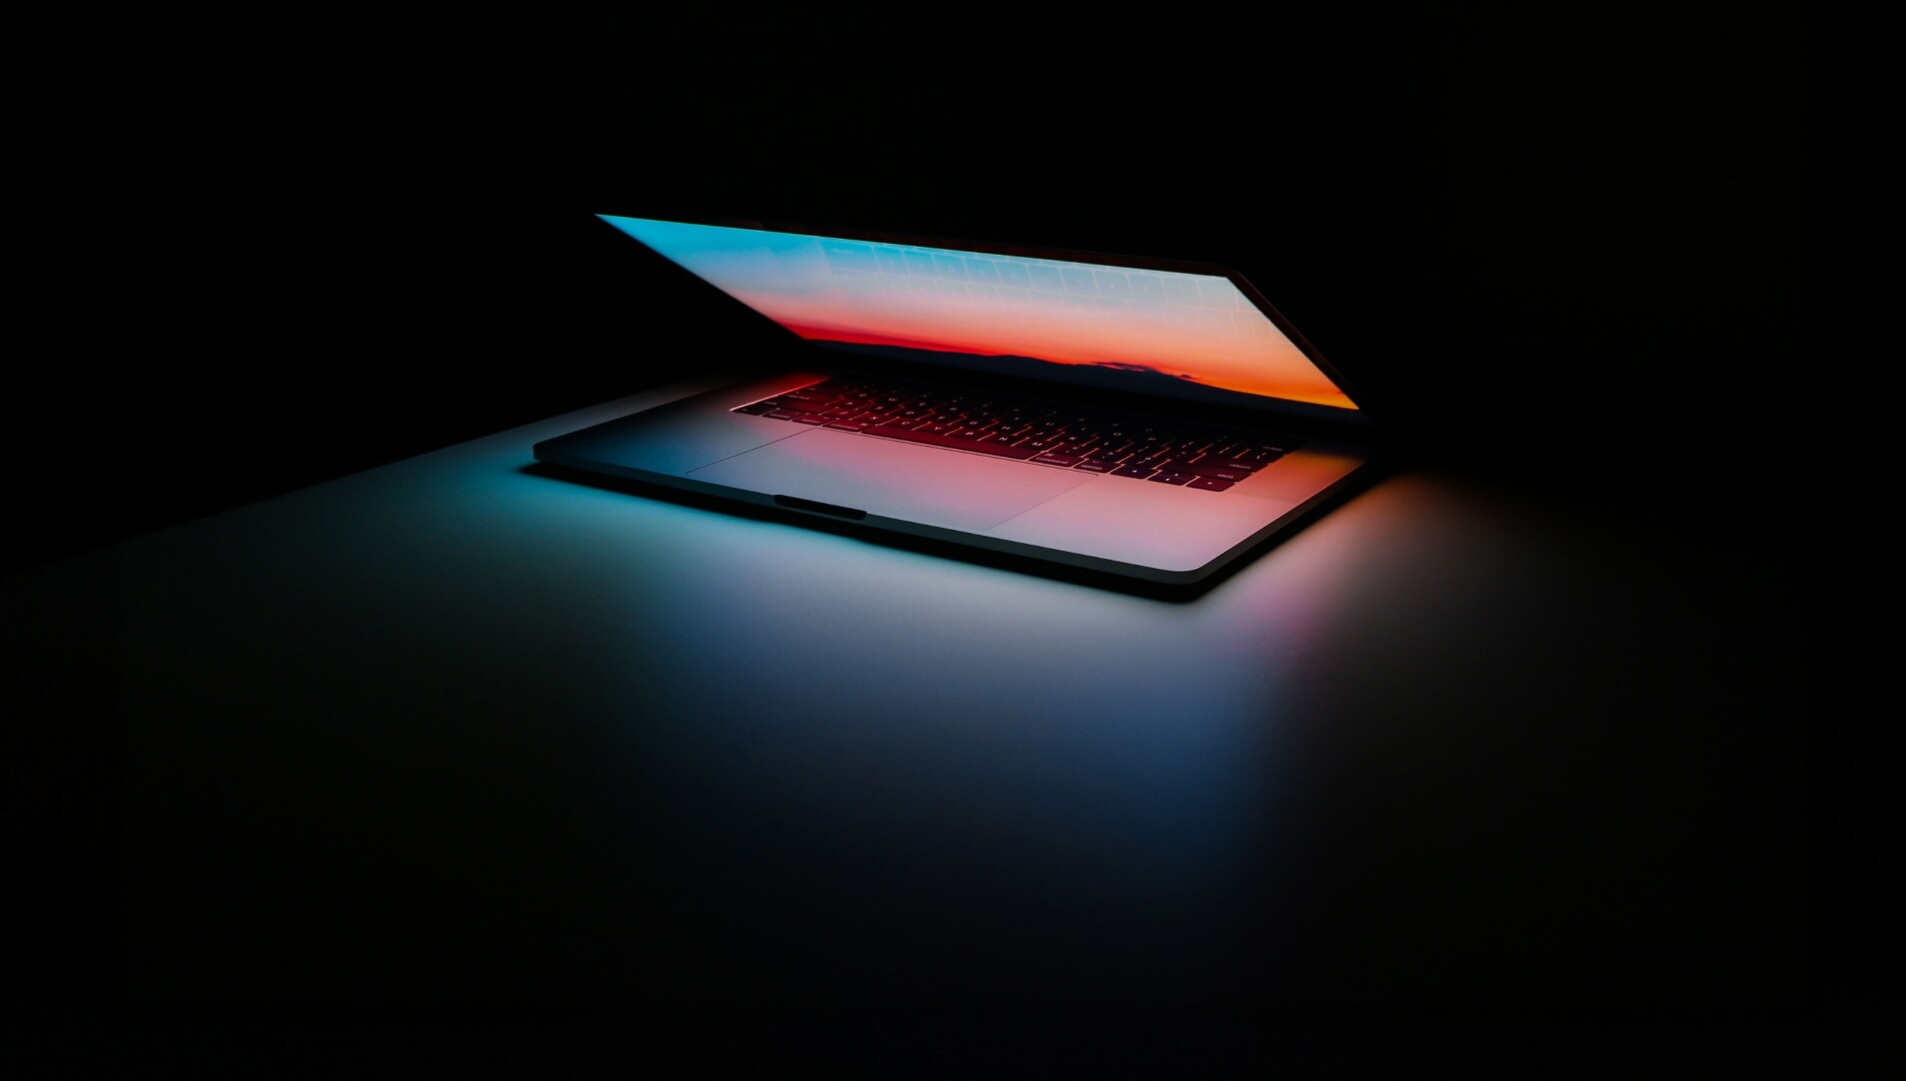 Glowing laptop